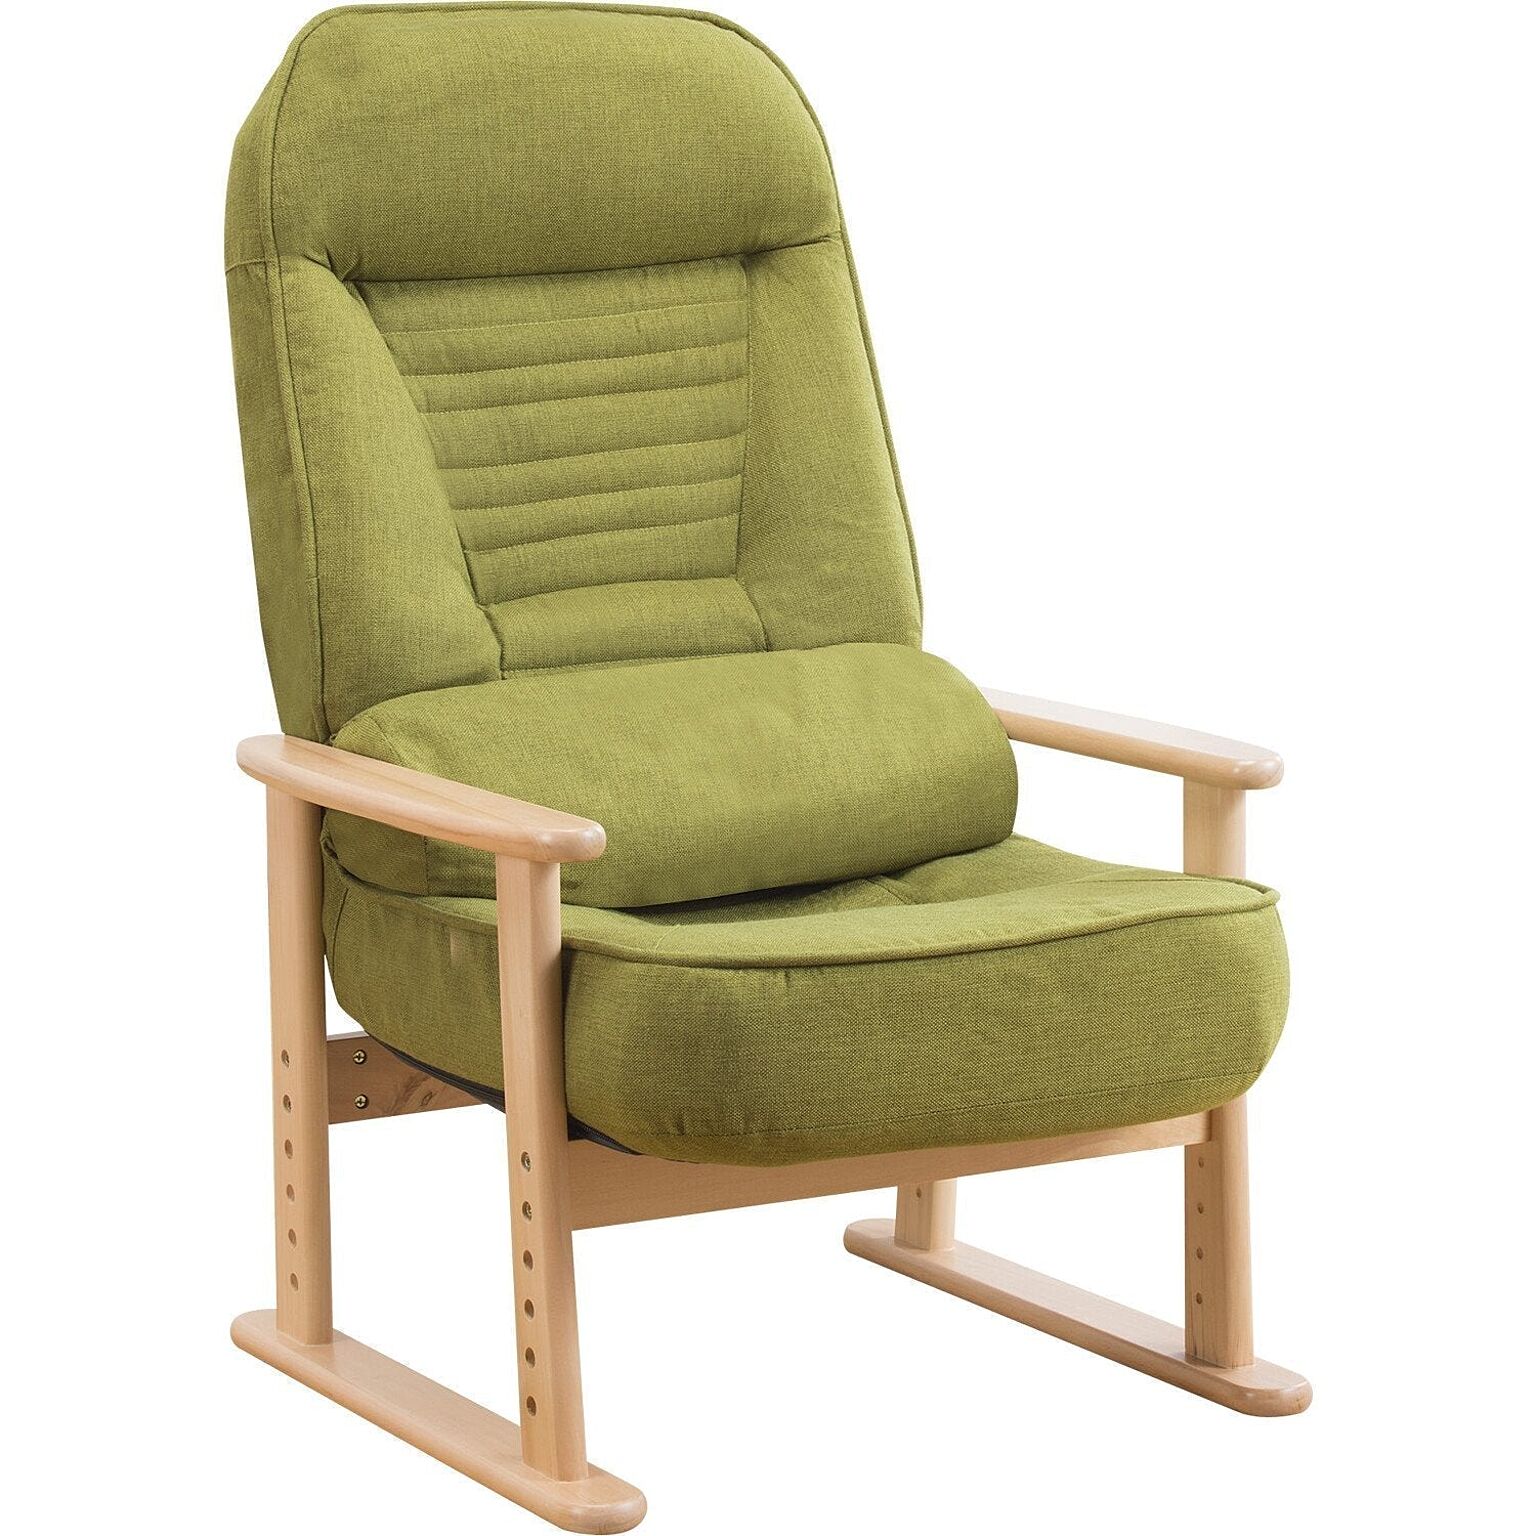 高座椅子 チェア リクライニング  座椅子  リクライニングチェア 低反発 一人用 天然木 肘付き クッション付き ハイバック イス 椅子